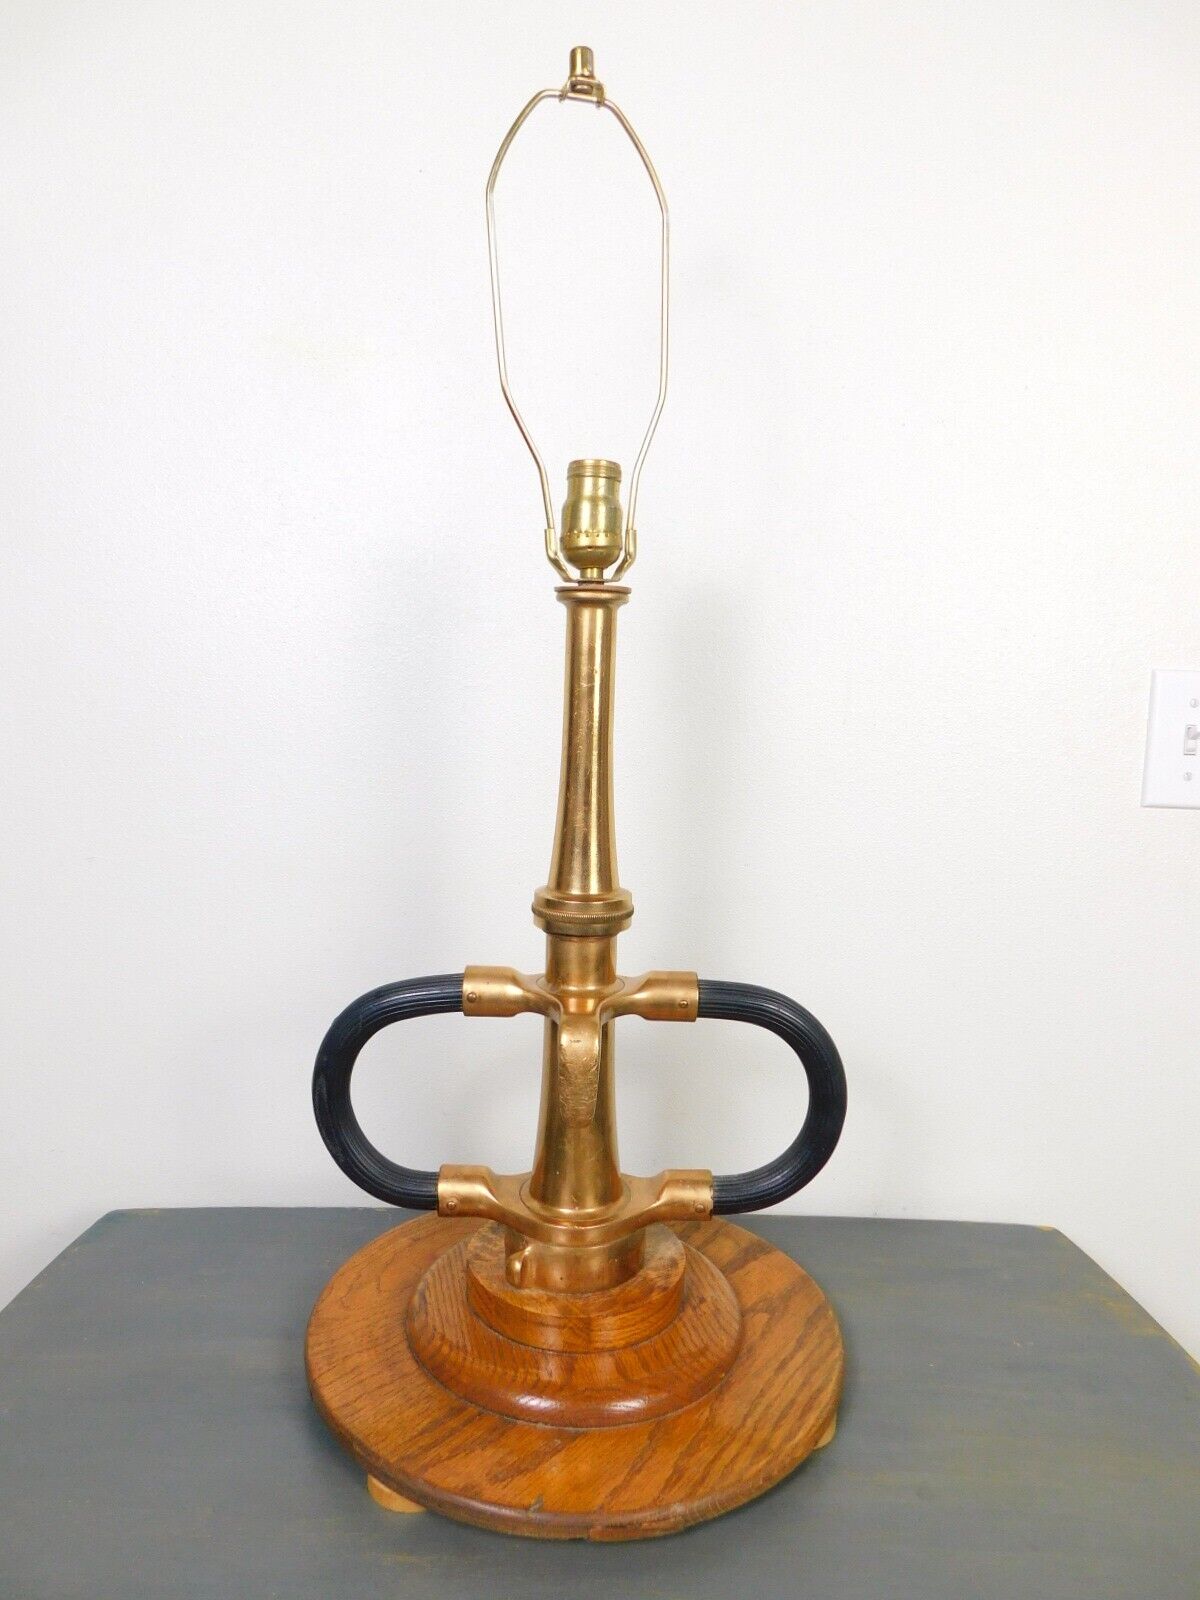 Antique 1900s Dbl Handle Deck Gun Fire Dept Deluge Water Brass Nozzle TABLE LAMP